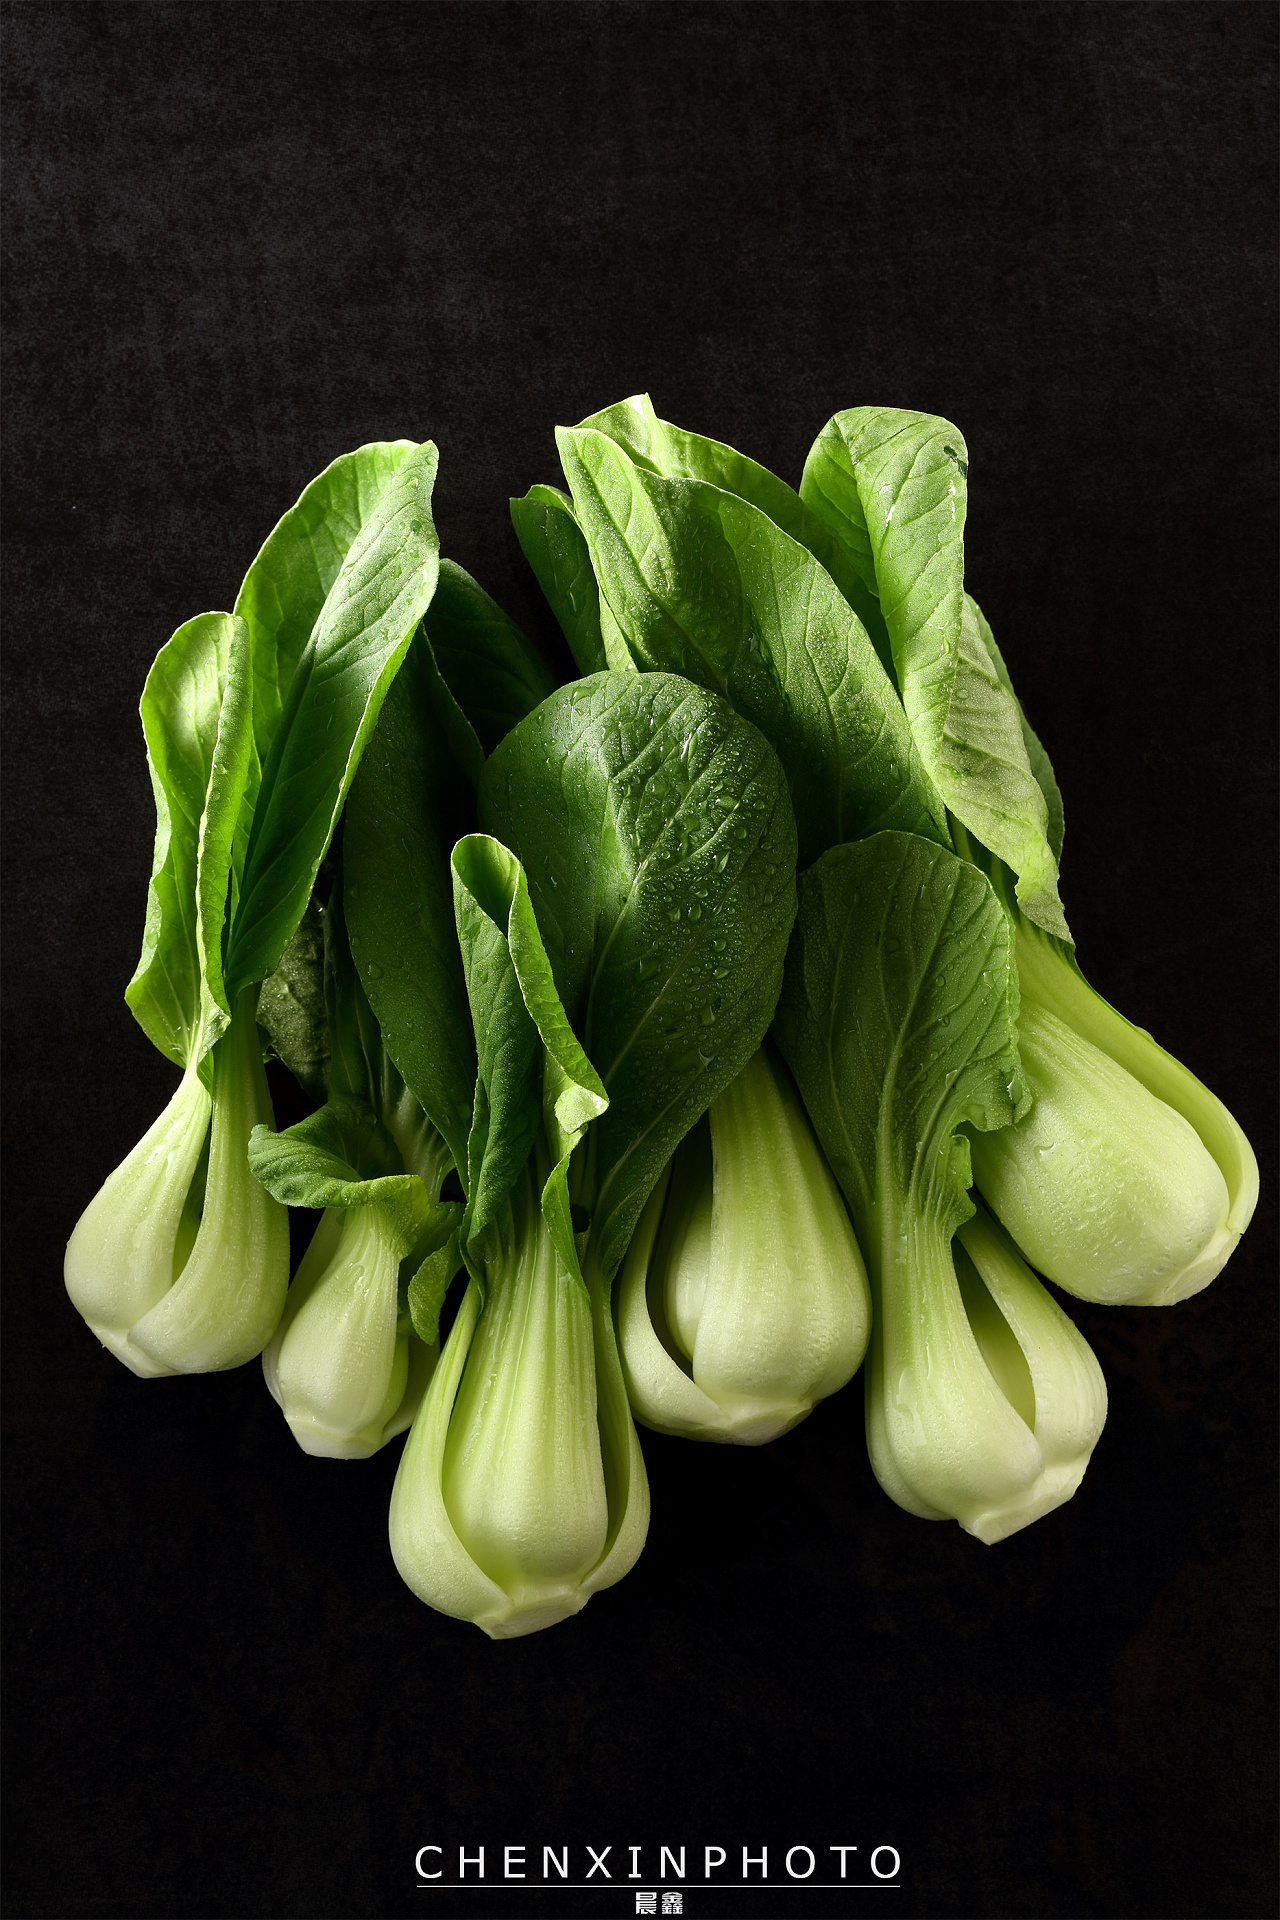 新鲜绿色蔬菜图片大全-新鲜绿色蔬菜高清图片下载-觅知网